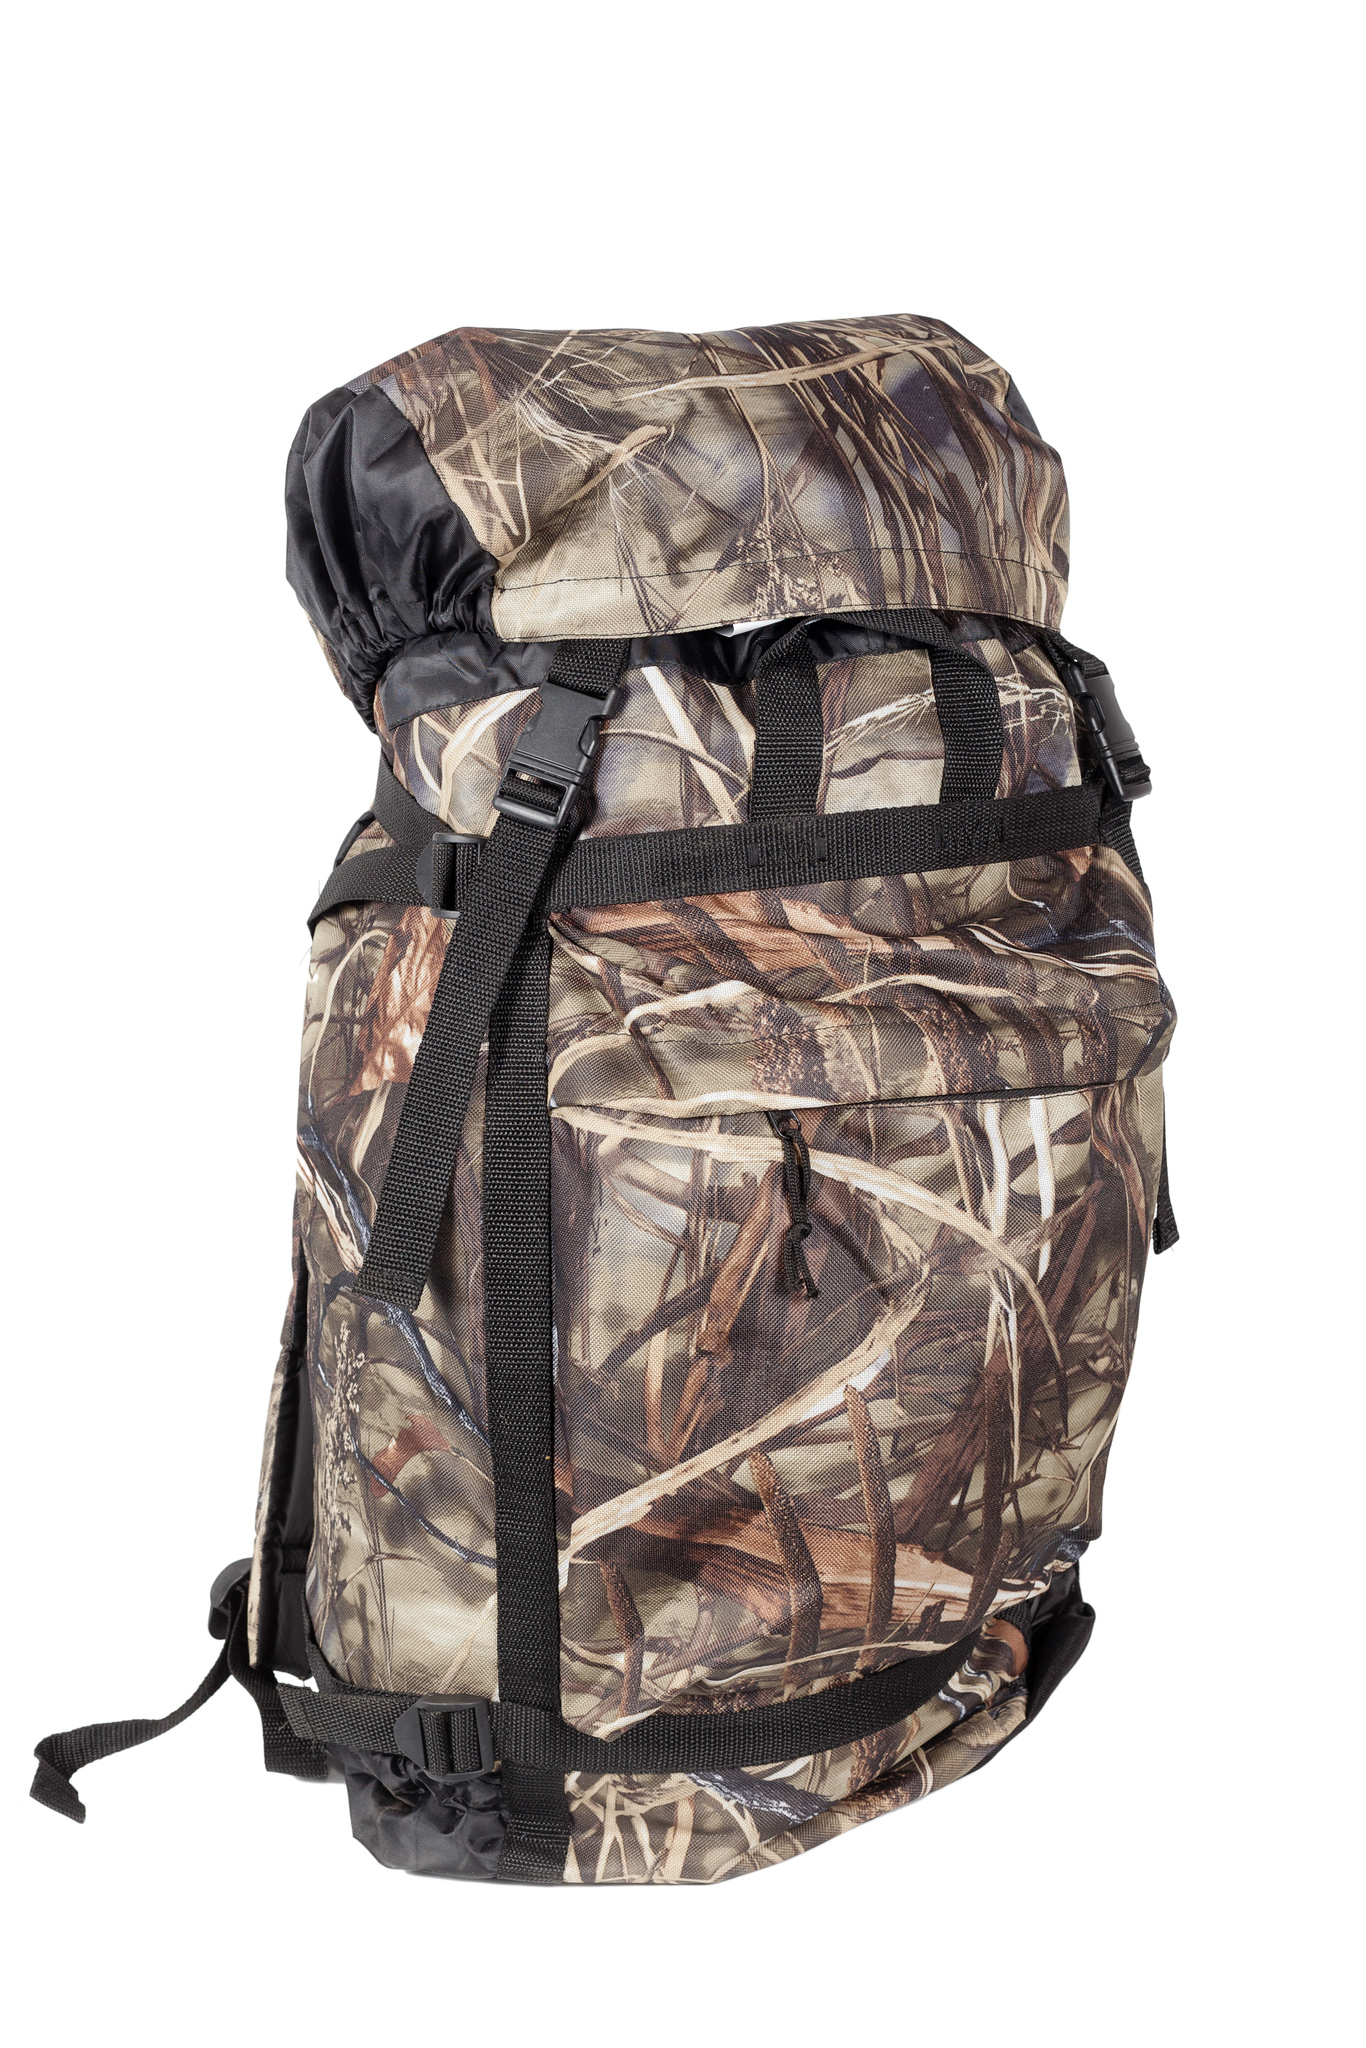 фото Туристический рюкзак huntsman боровик №40 40 л коричневый/бежевый